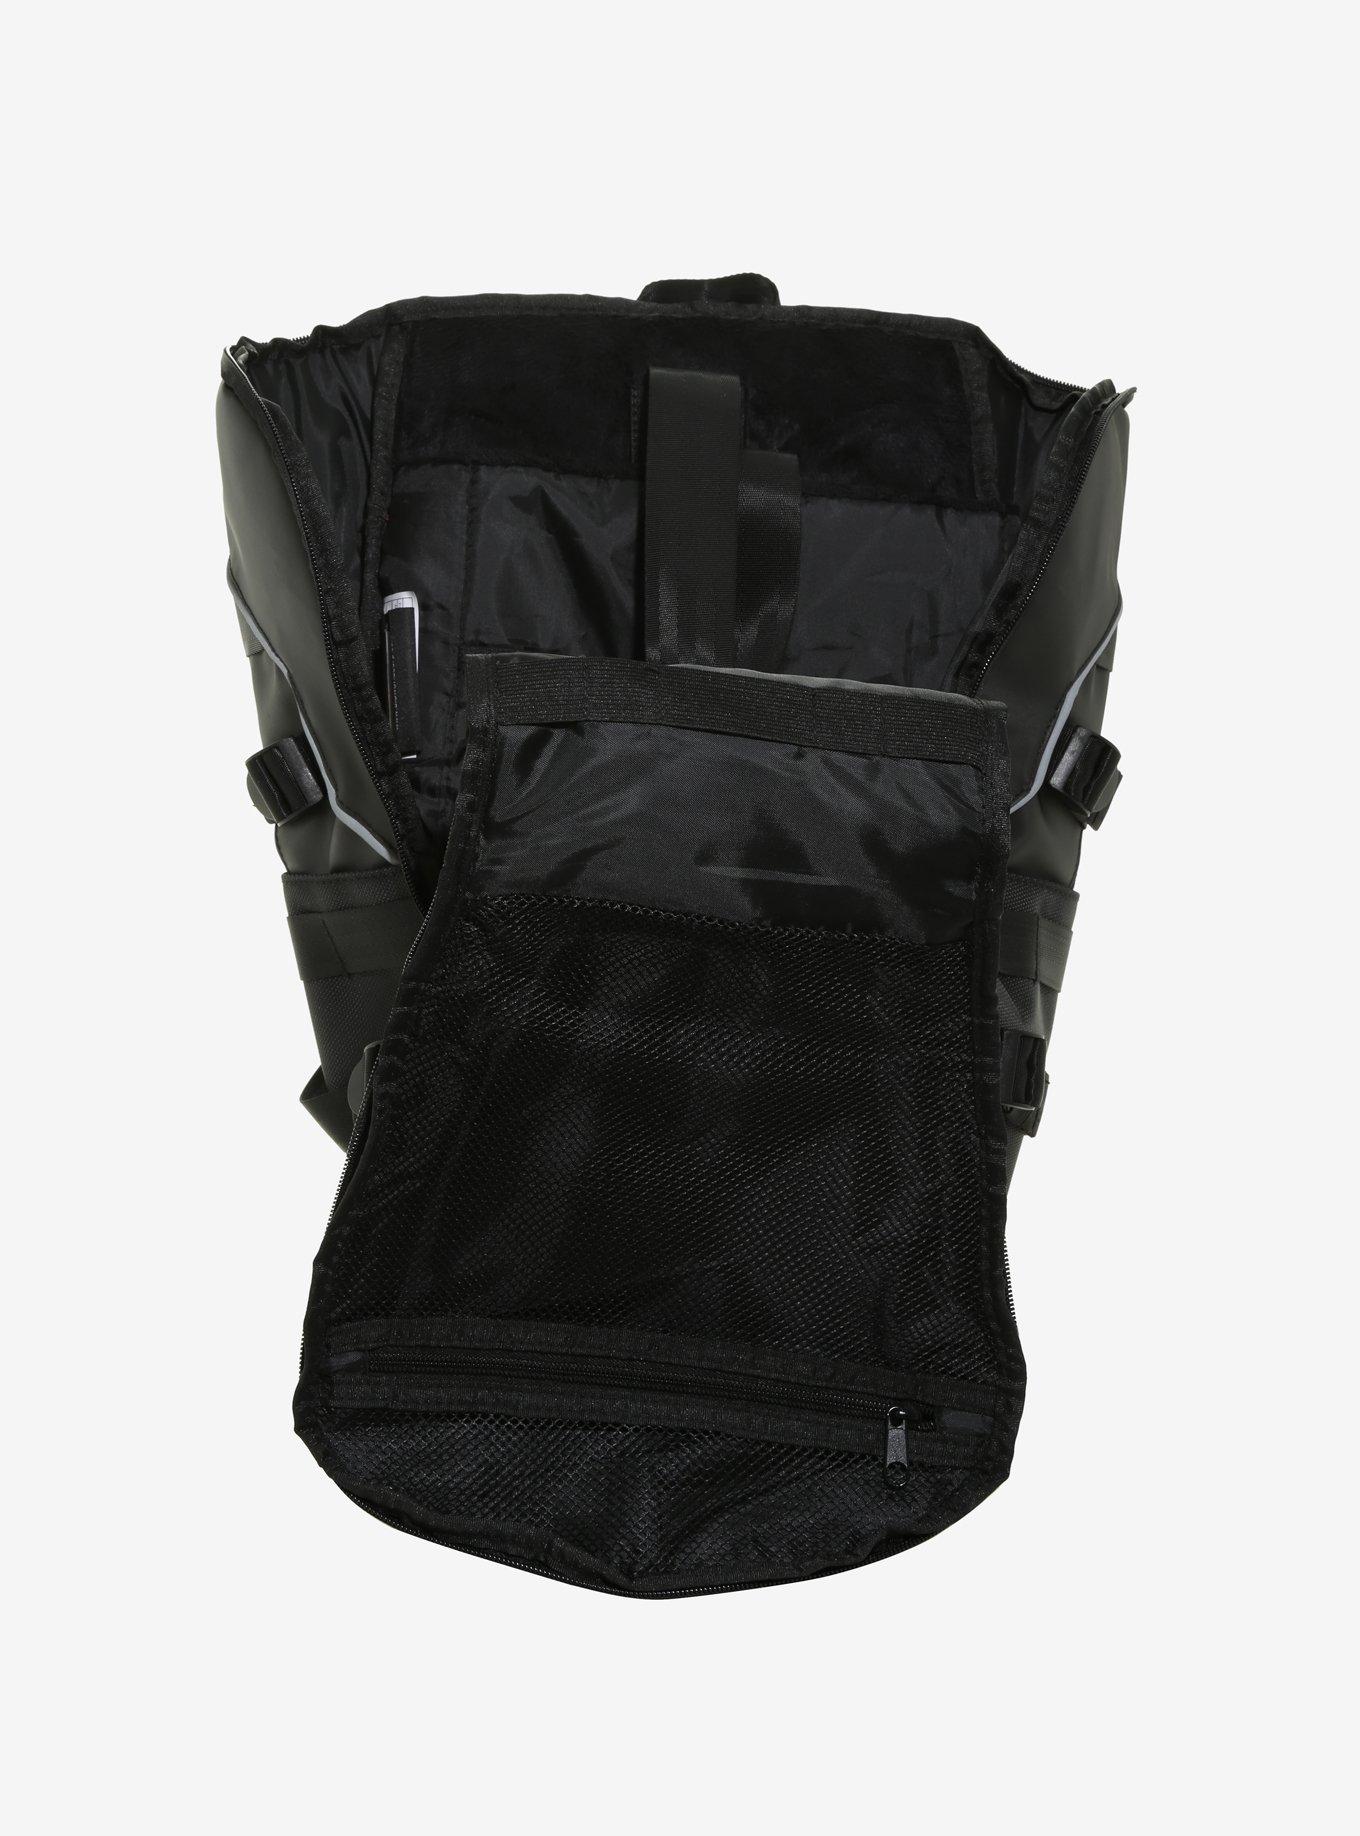 Marvel Black Panther Built-Up Backpack, , alternate